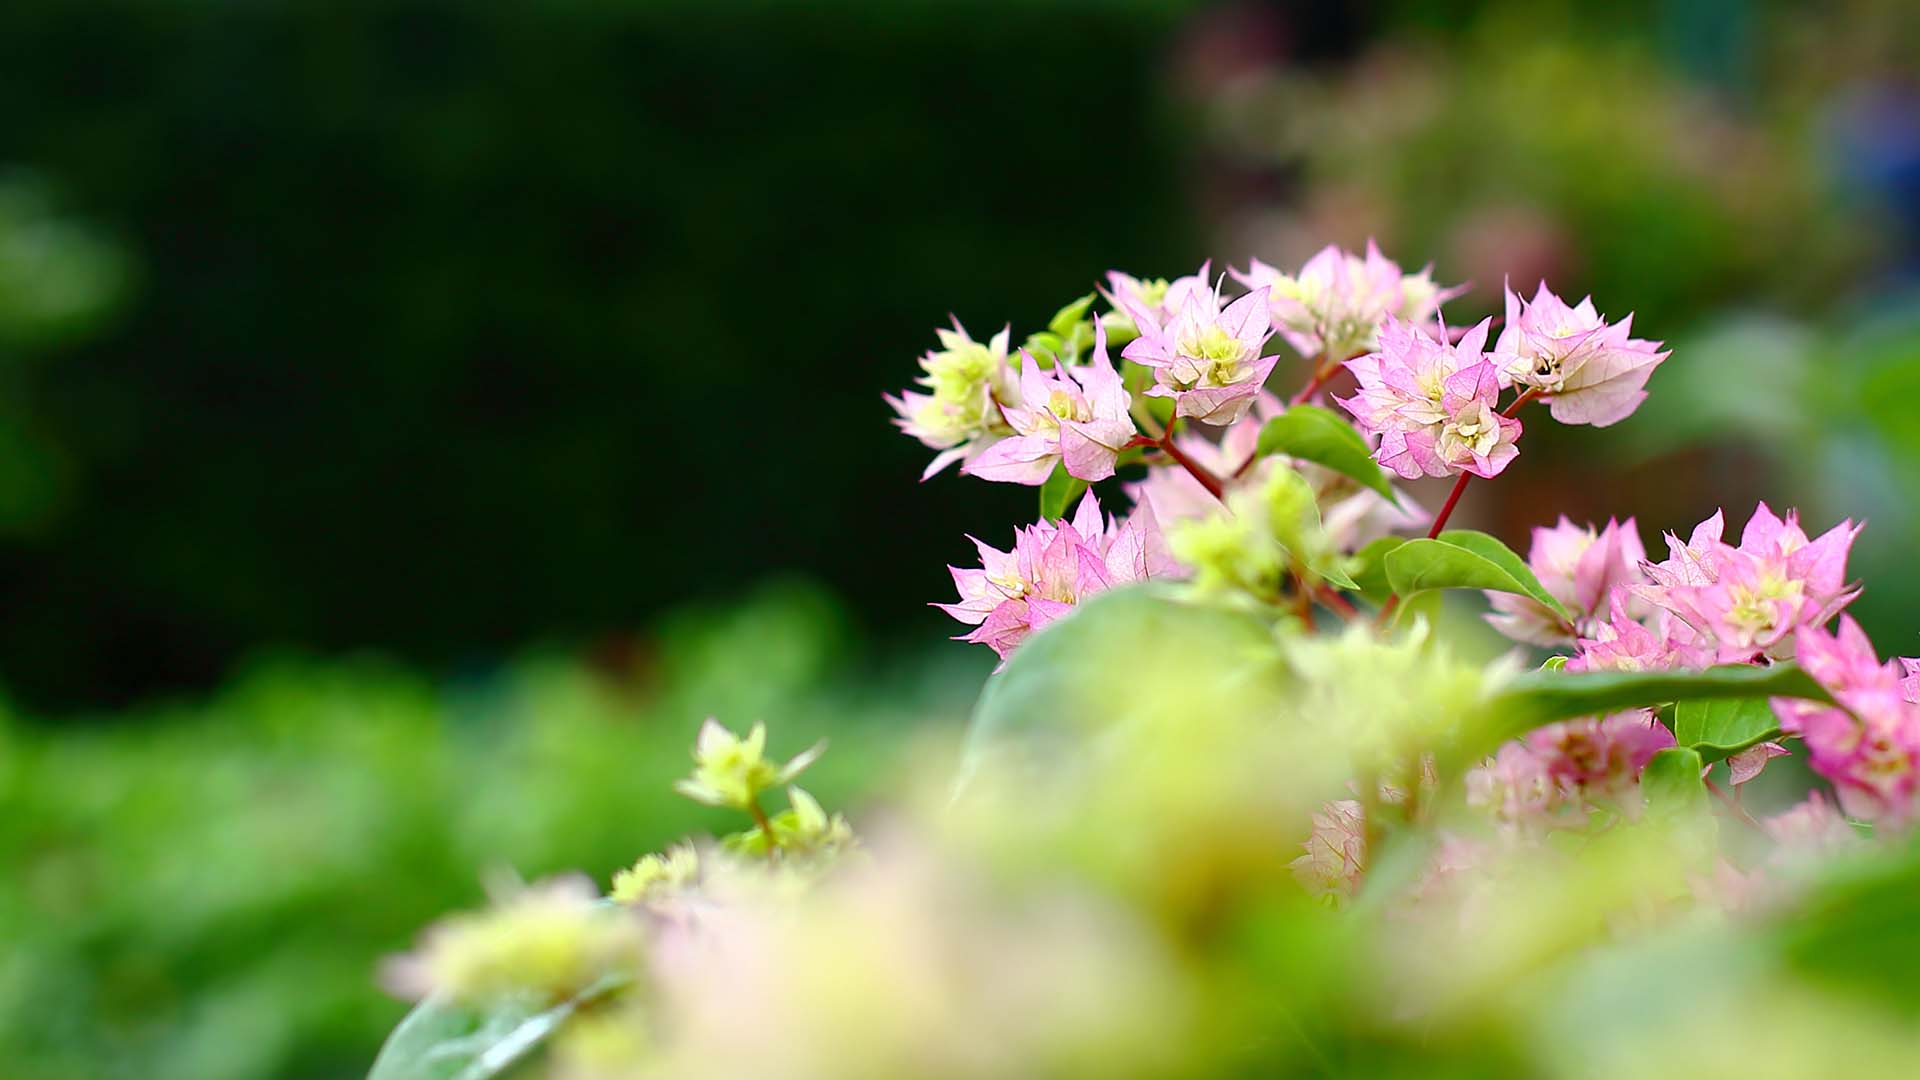 高清微距植物摄影图片 绿色护眼花卉植物微距摄影图片